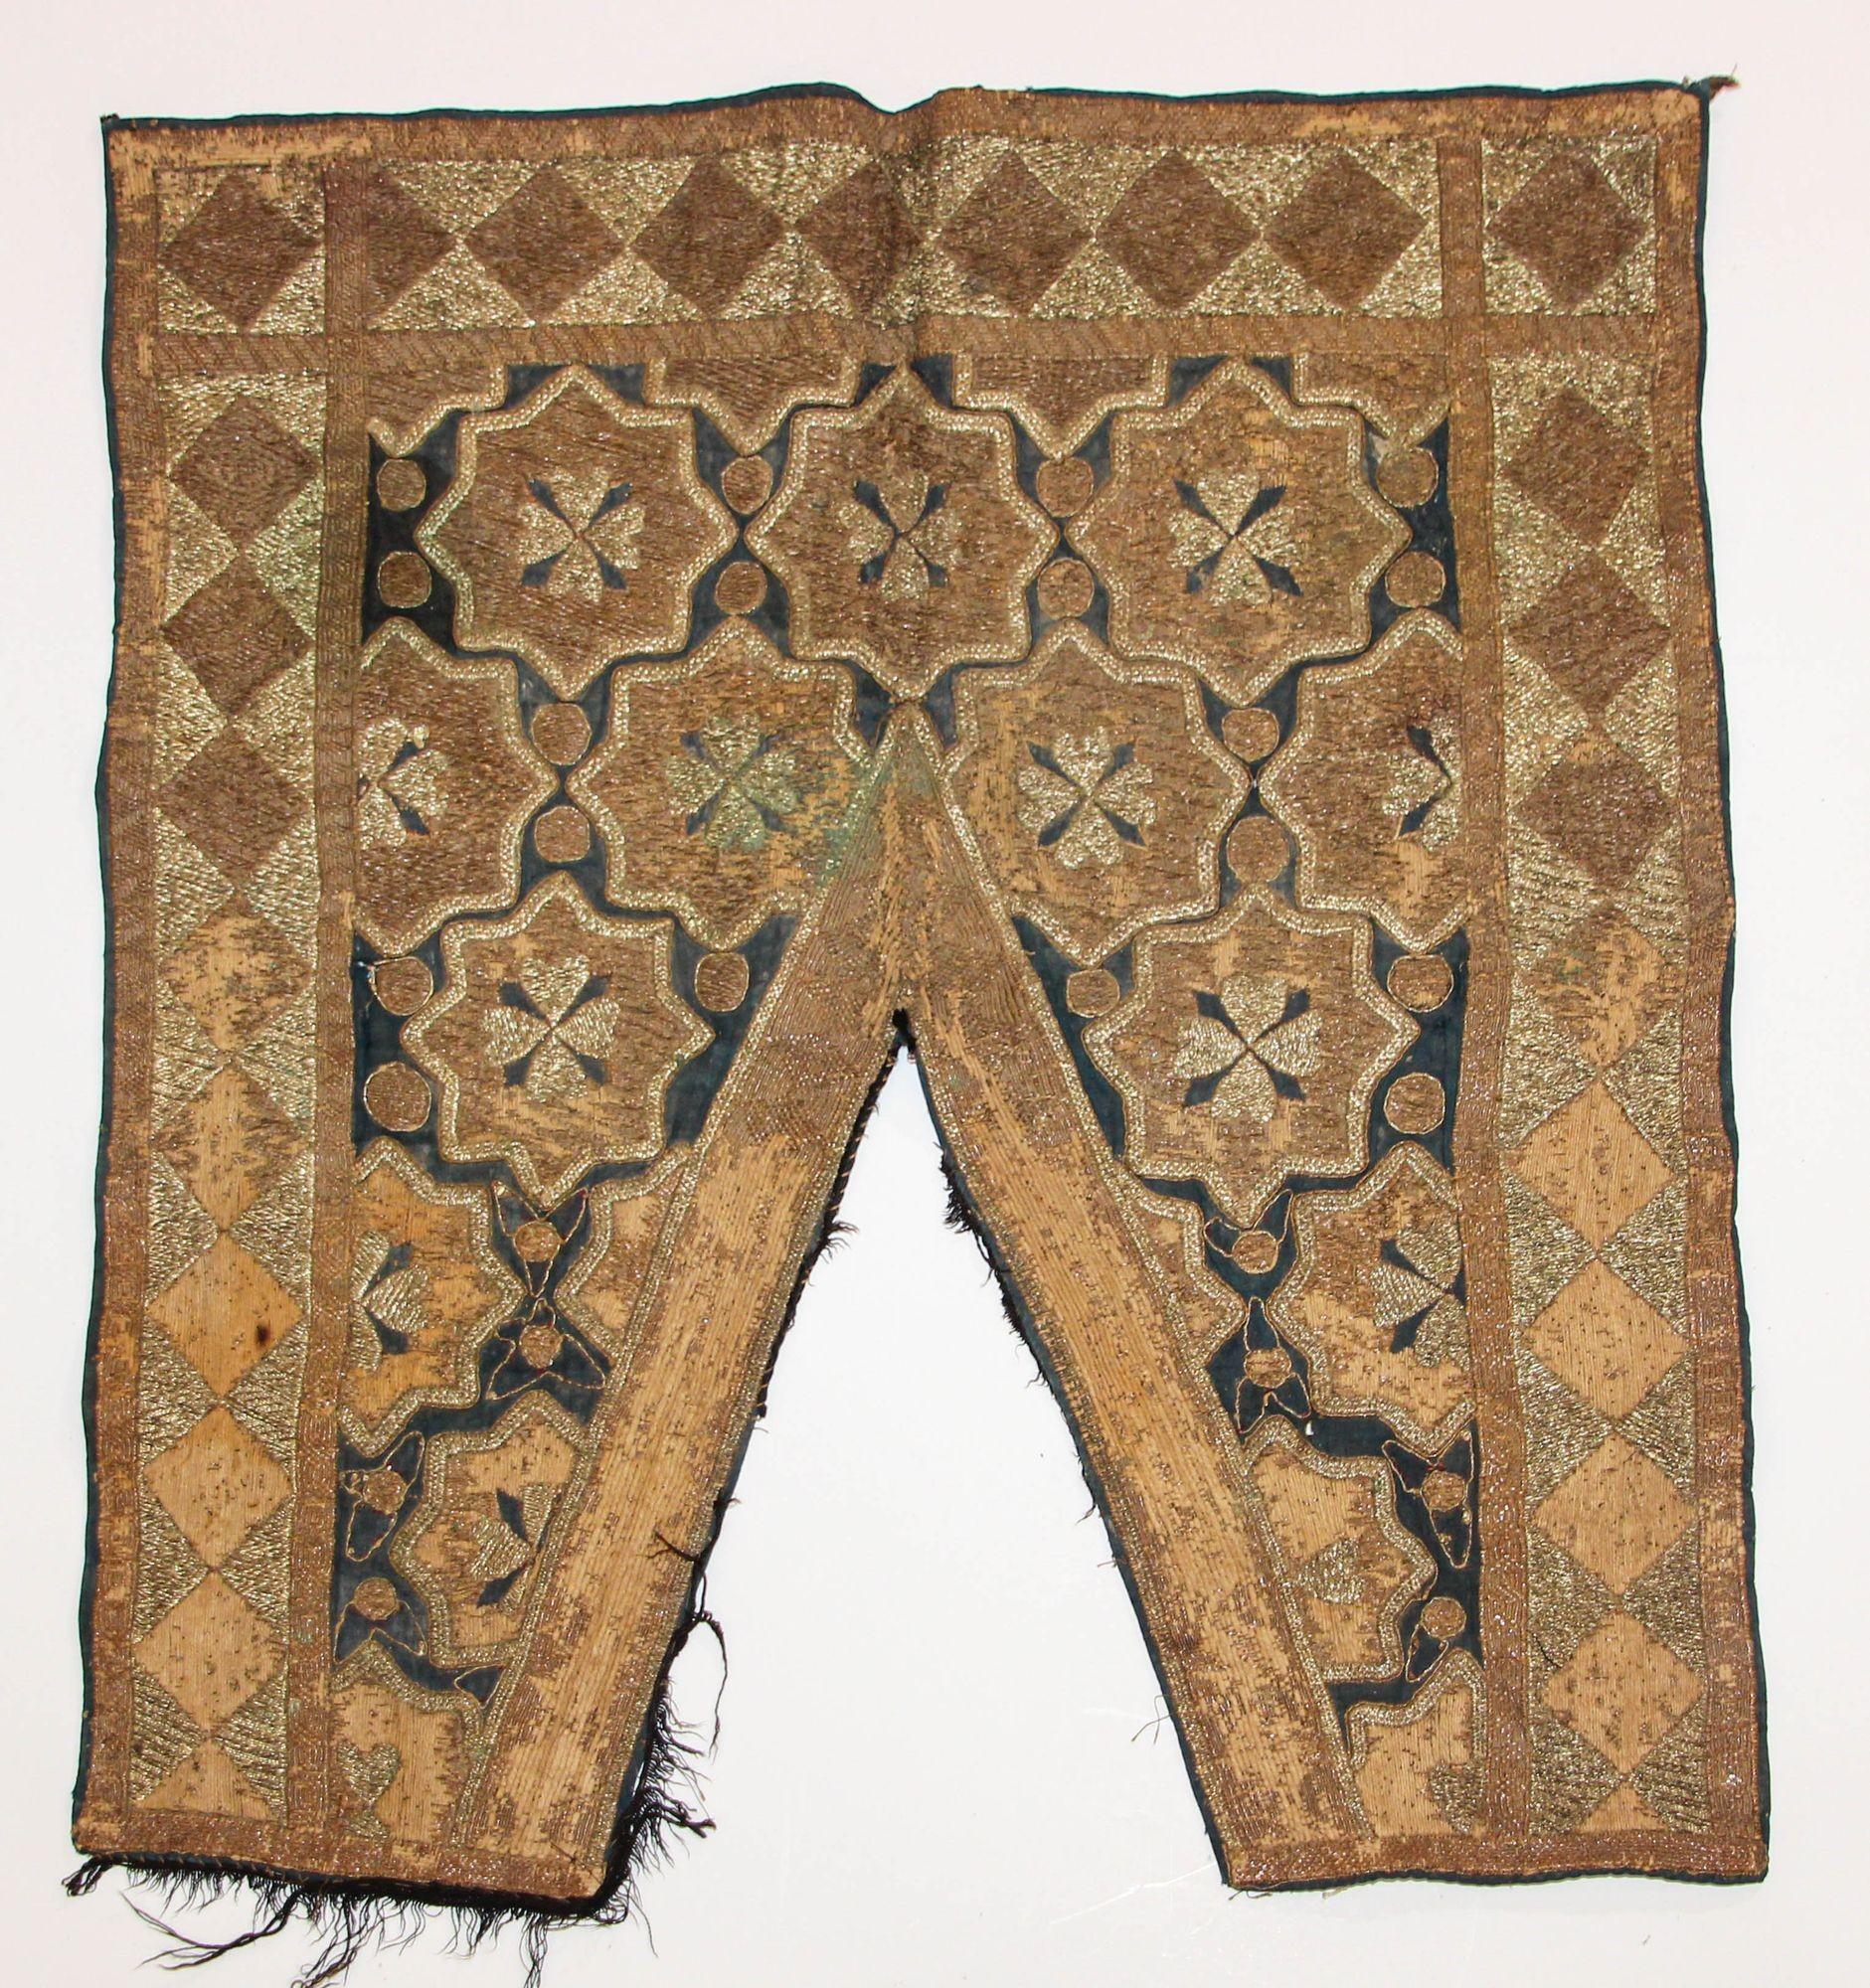 19. Jahrhundert islamische Kunst, osmanische maurische metallische Fäden bestickte gewölbte Textil.
Collectible Museum Qualität antike Textilfragment wahrscheinlich Teil eines Wandbehangs oder Spiegel Tuch.
Frühes 19. Jahrhundert, antike islamische